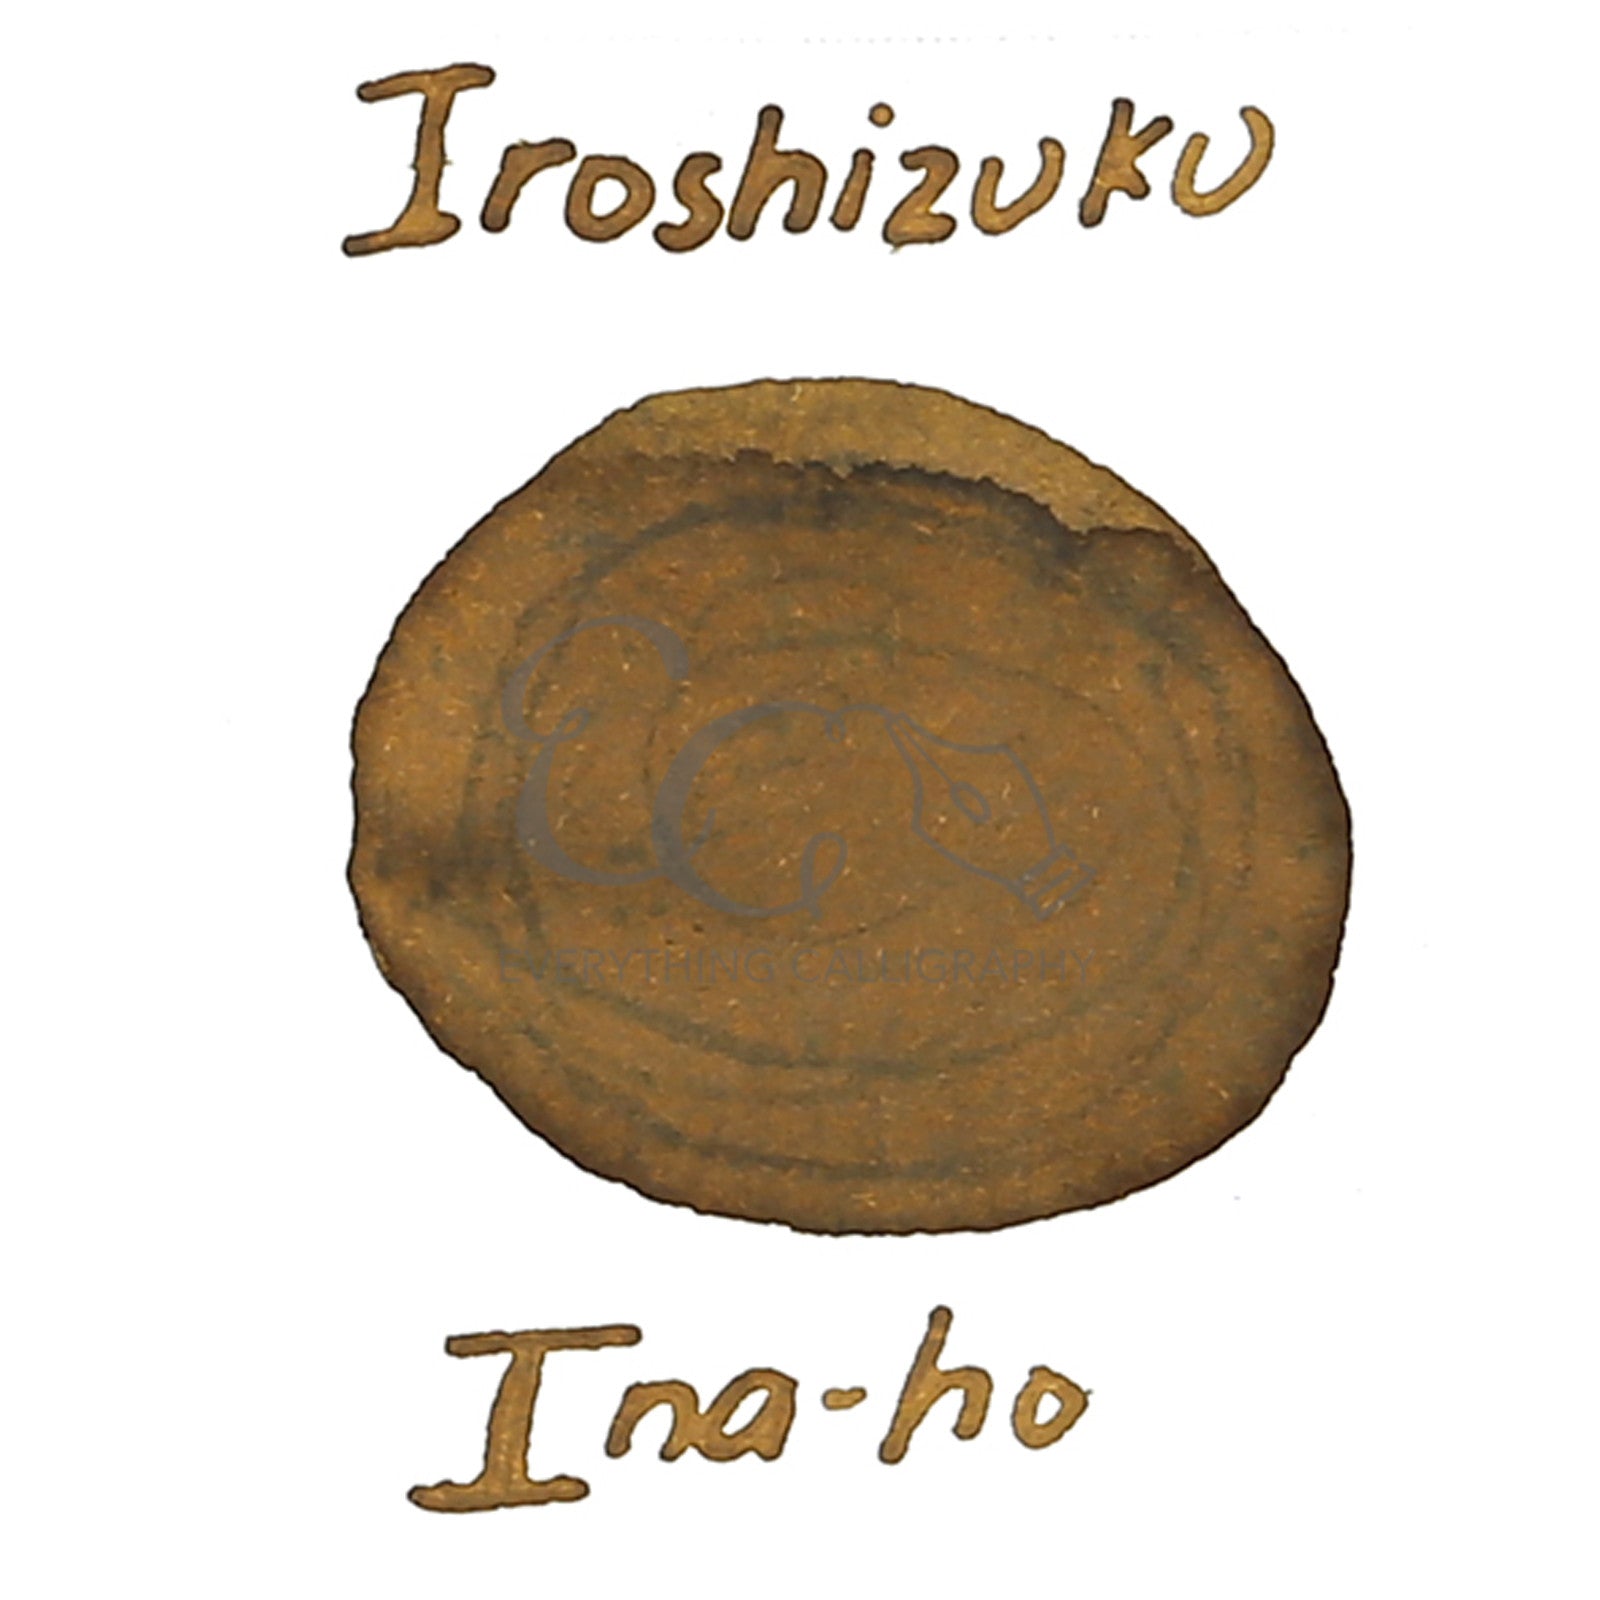 Pilot Iroshizuku Inks (15ml)